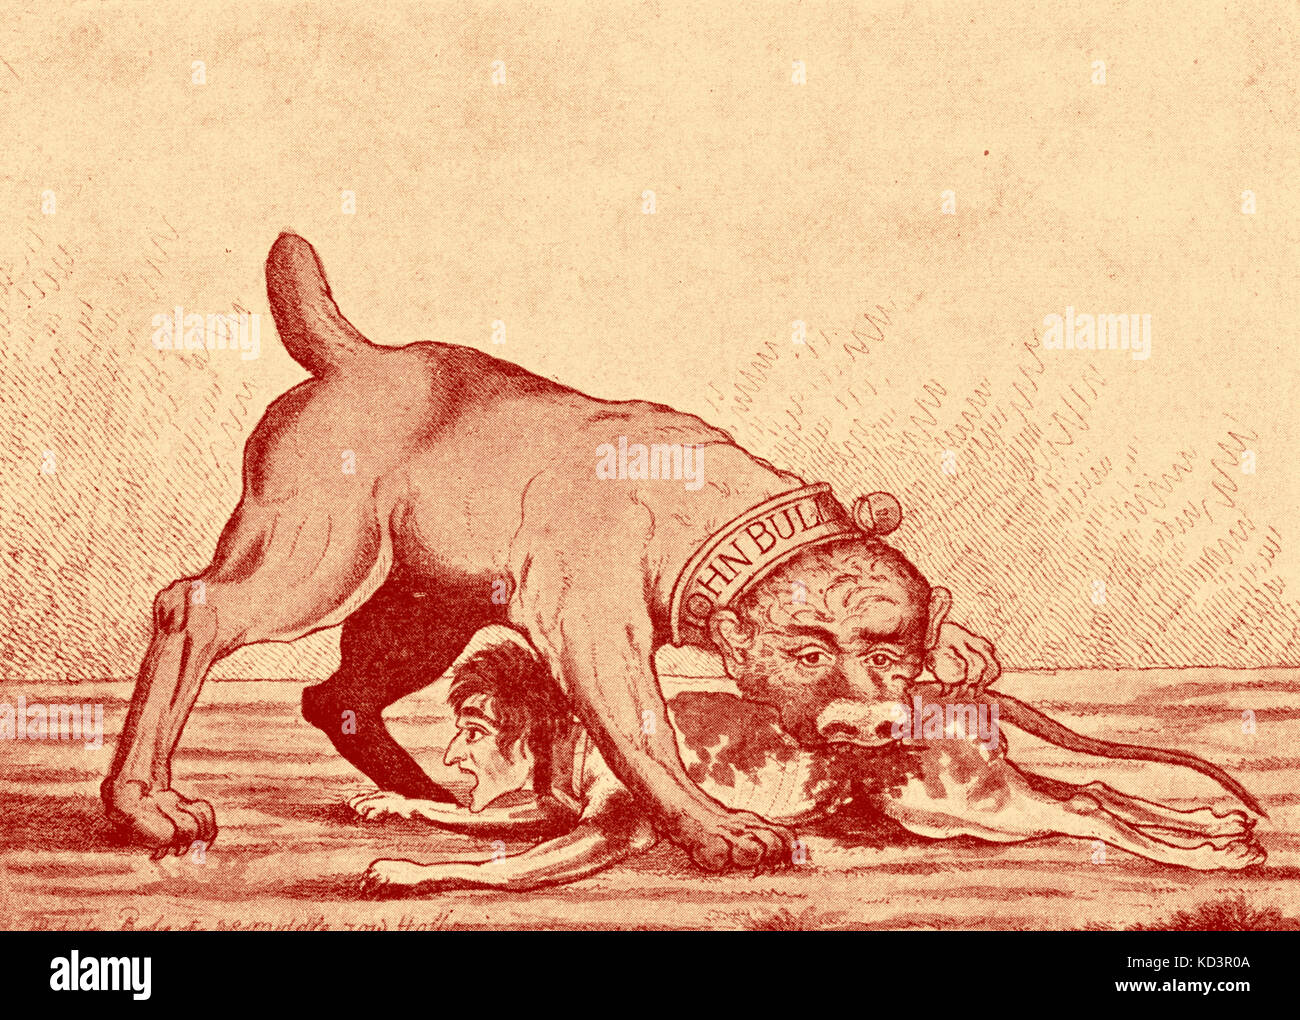 John Bull und Napoleon Bonaparte, im Jahr 1815 karikieren über die Niederlage Napoléons bei Waterloo. Bildunterschrift lautet: "The English Bulldog and the Corsican bloodhound". Stockfoto